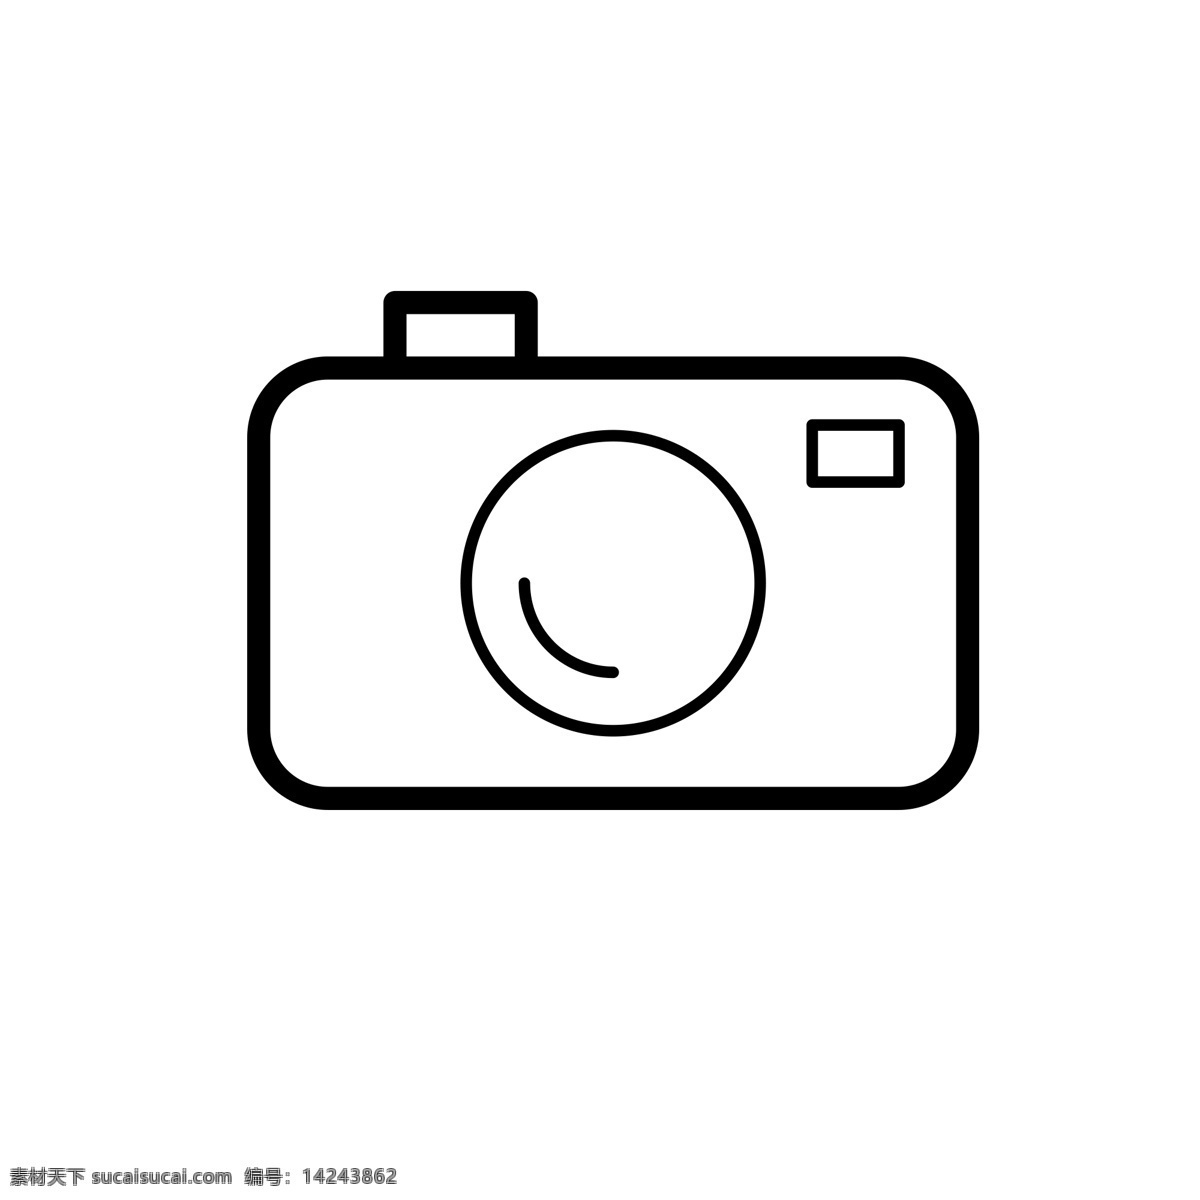 扁平化照相机 相机 照相机 扁平化ui ui图标 手机图标 界面ui 网页ui h5图标